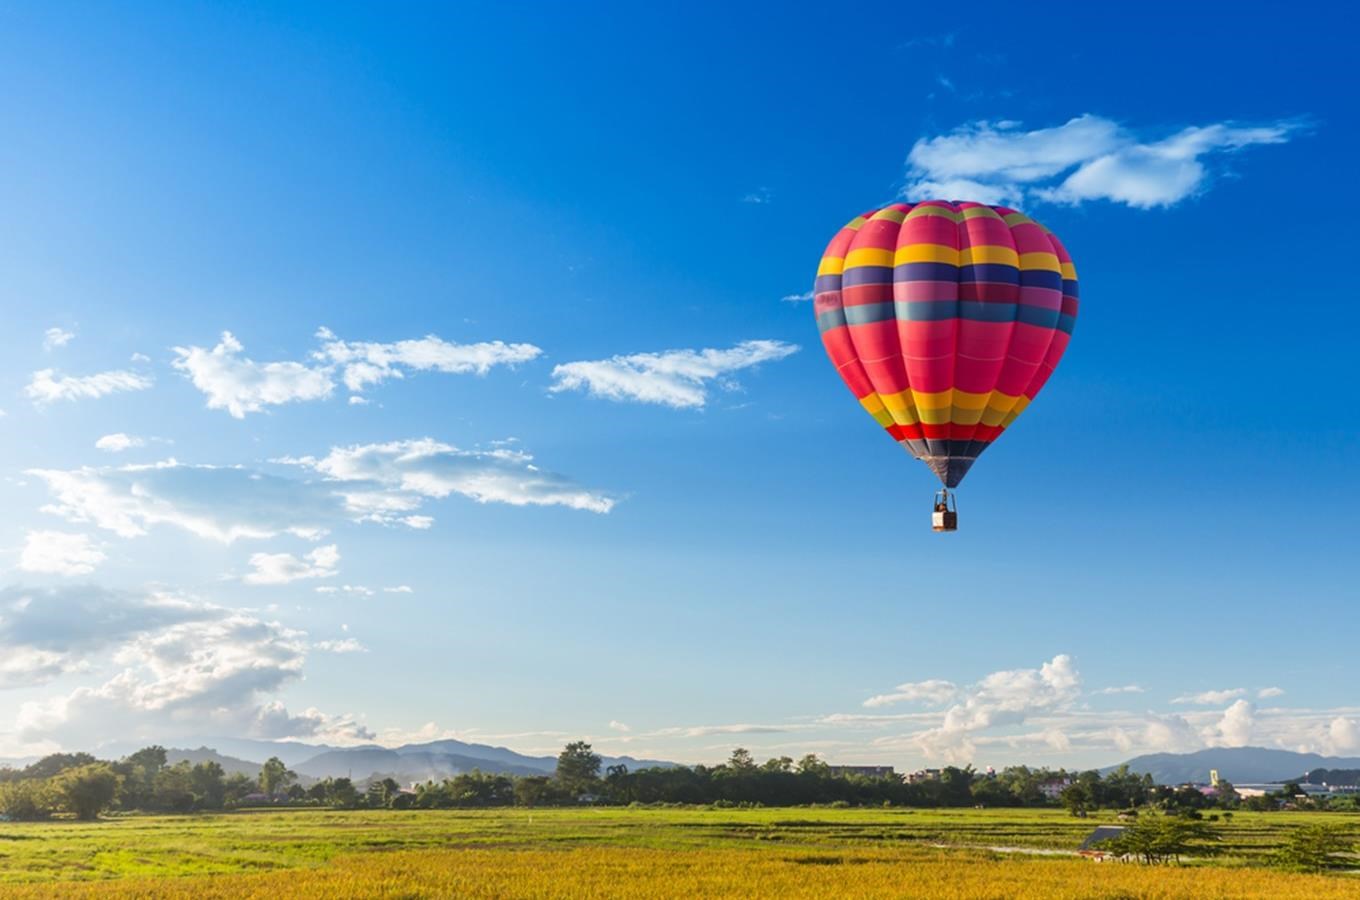 Letadla, vrtulníky a balony: 10 tipů na vyhlídkové lety